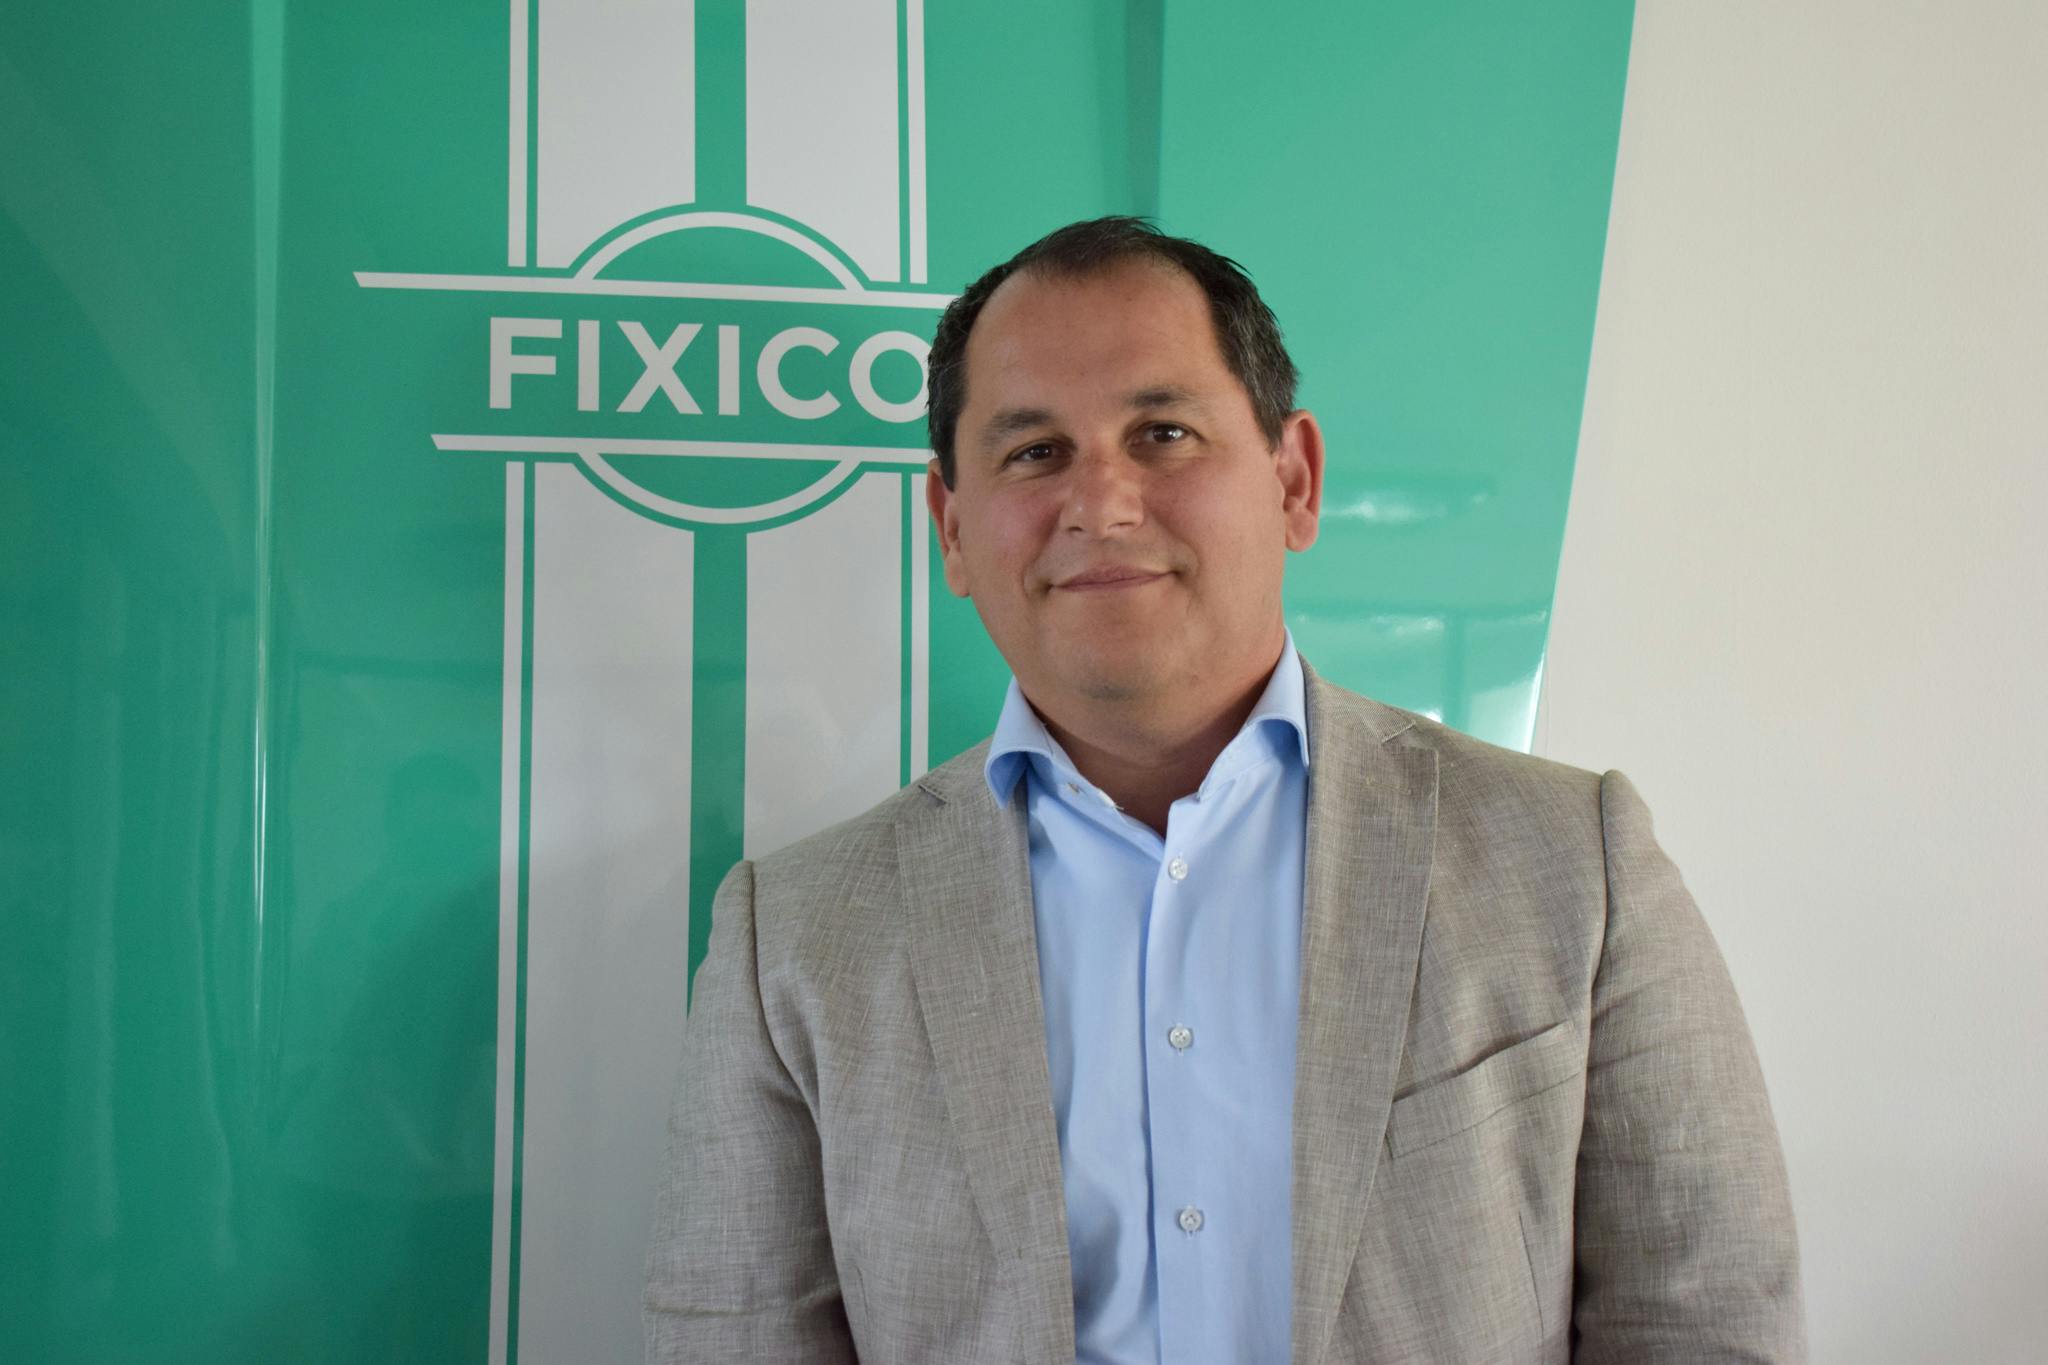 Fixico nomme Frans Ditmer au poste de CCO